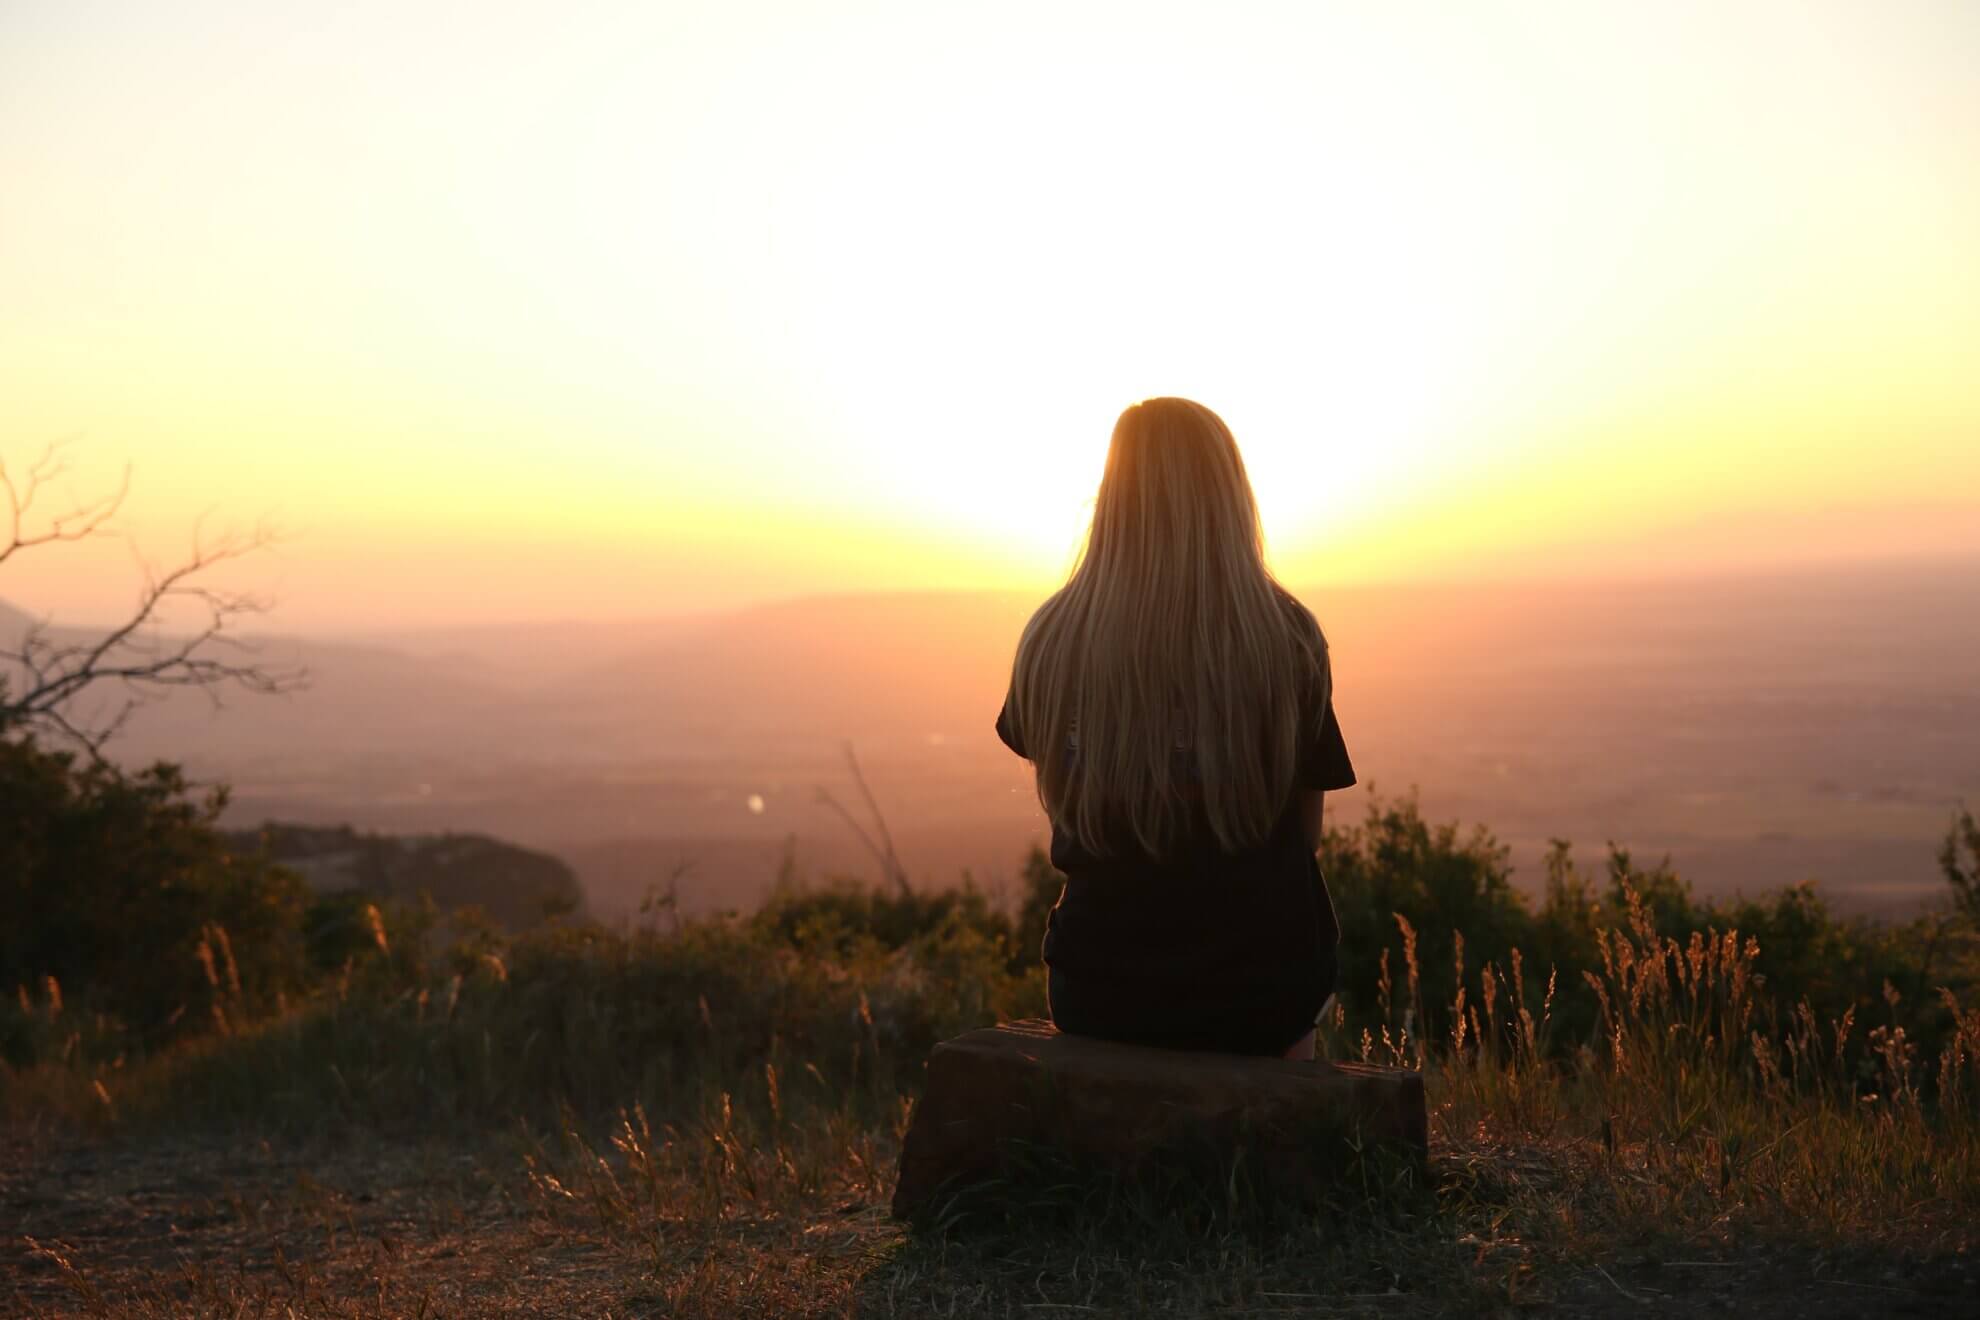 Eine Frau schaut auf einem Stein sitzend in den Sonnenaufgang. Diese Bild steht, dafür, dass es auch nach einer Dunklen Zeit weitergeht und man auch schwere Zeiten in einem individuellen Ritual verabschieden und hinter sich lassen kann.